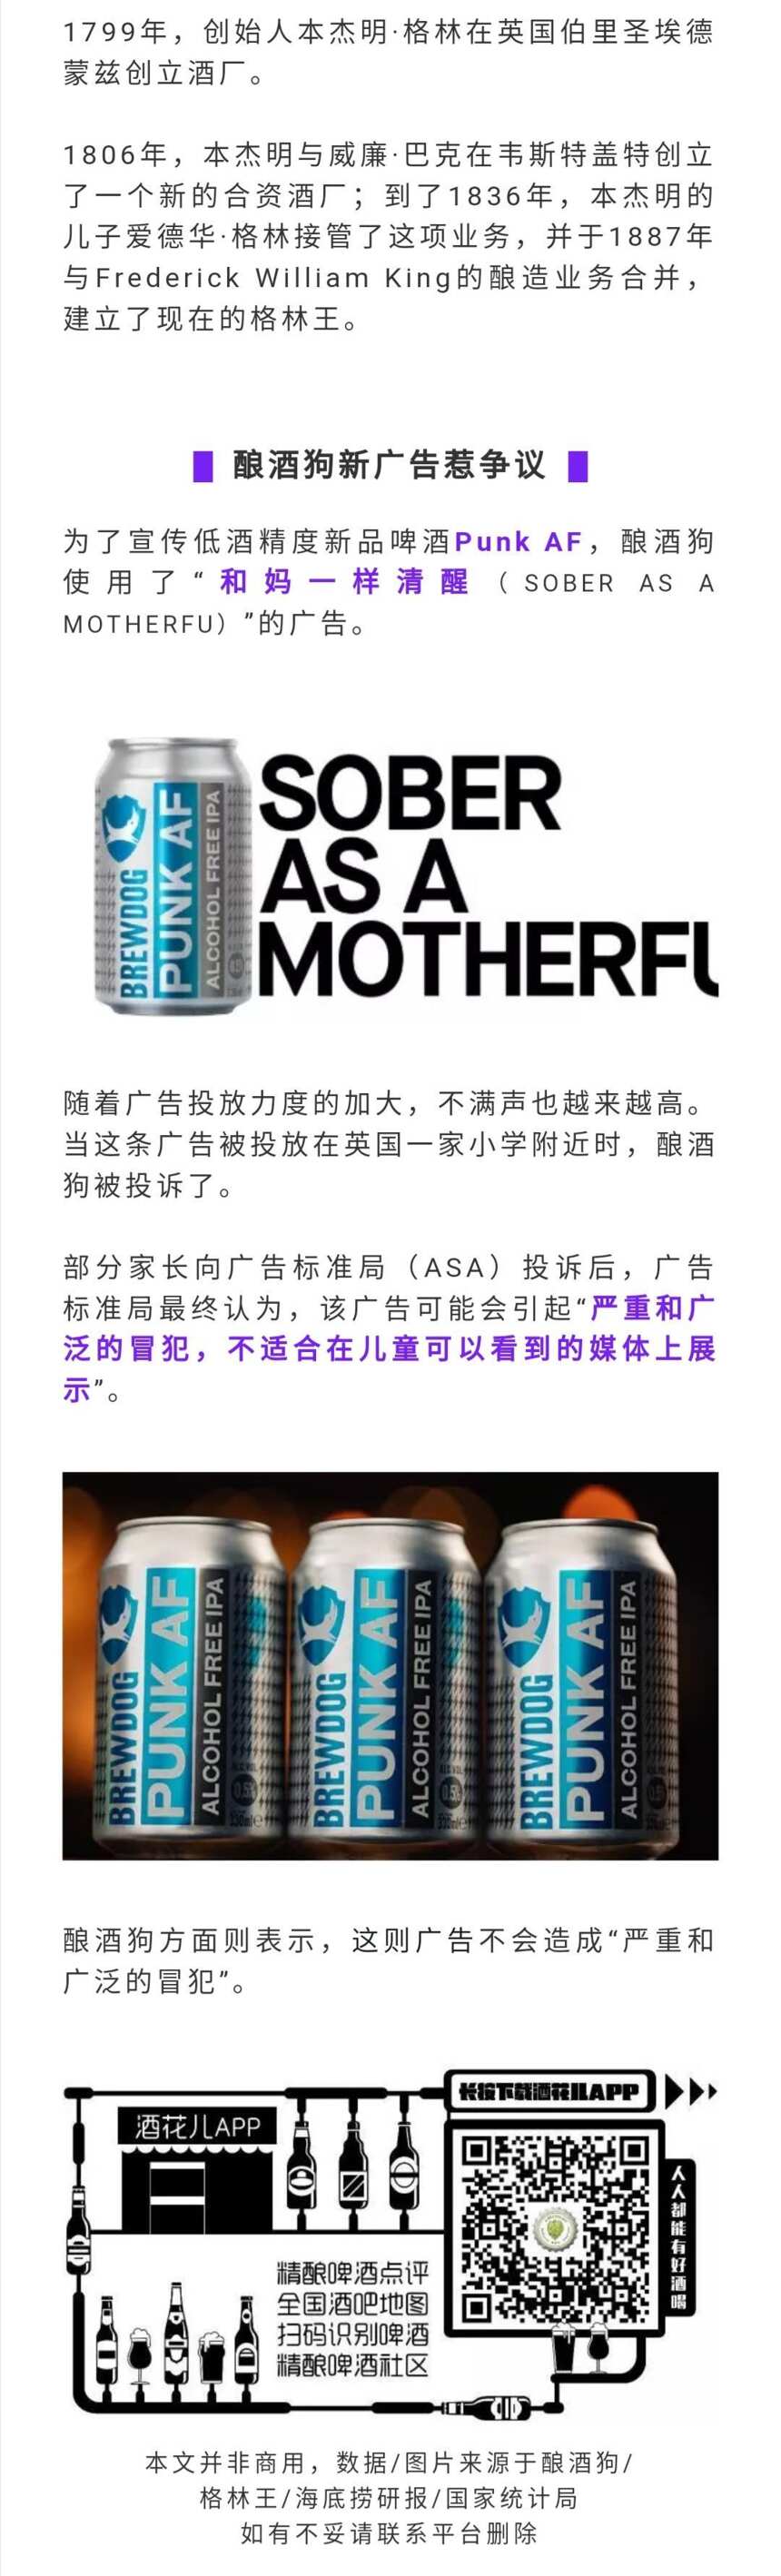 快讯丨海底捞啤酒销售额达4亿；格林王啤酒专属冰屋